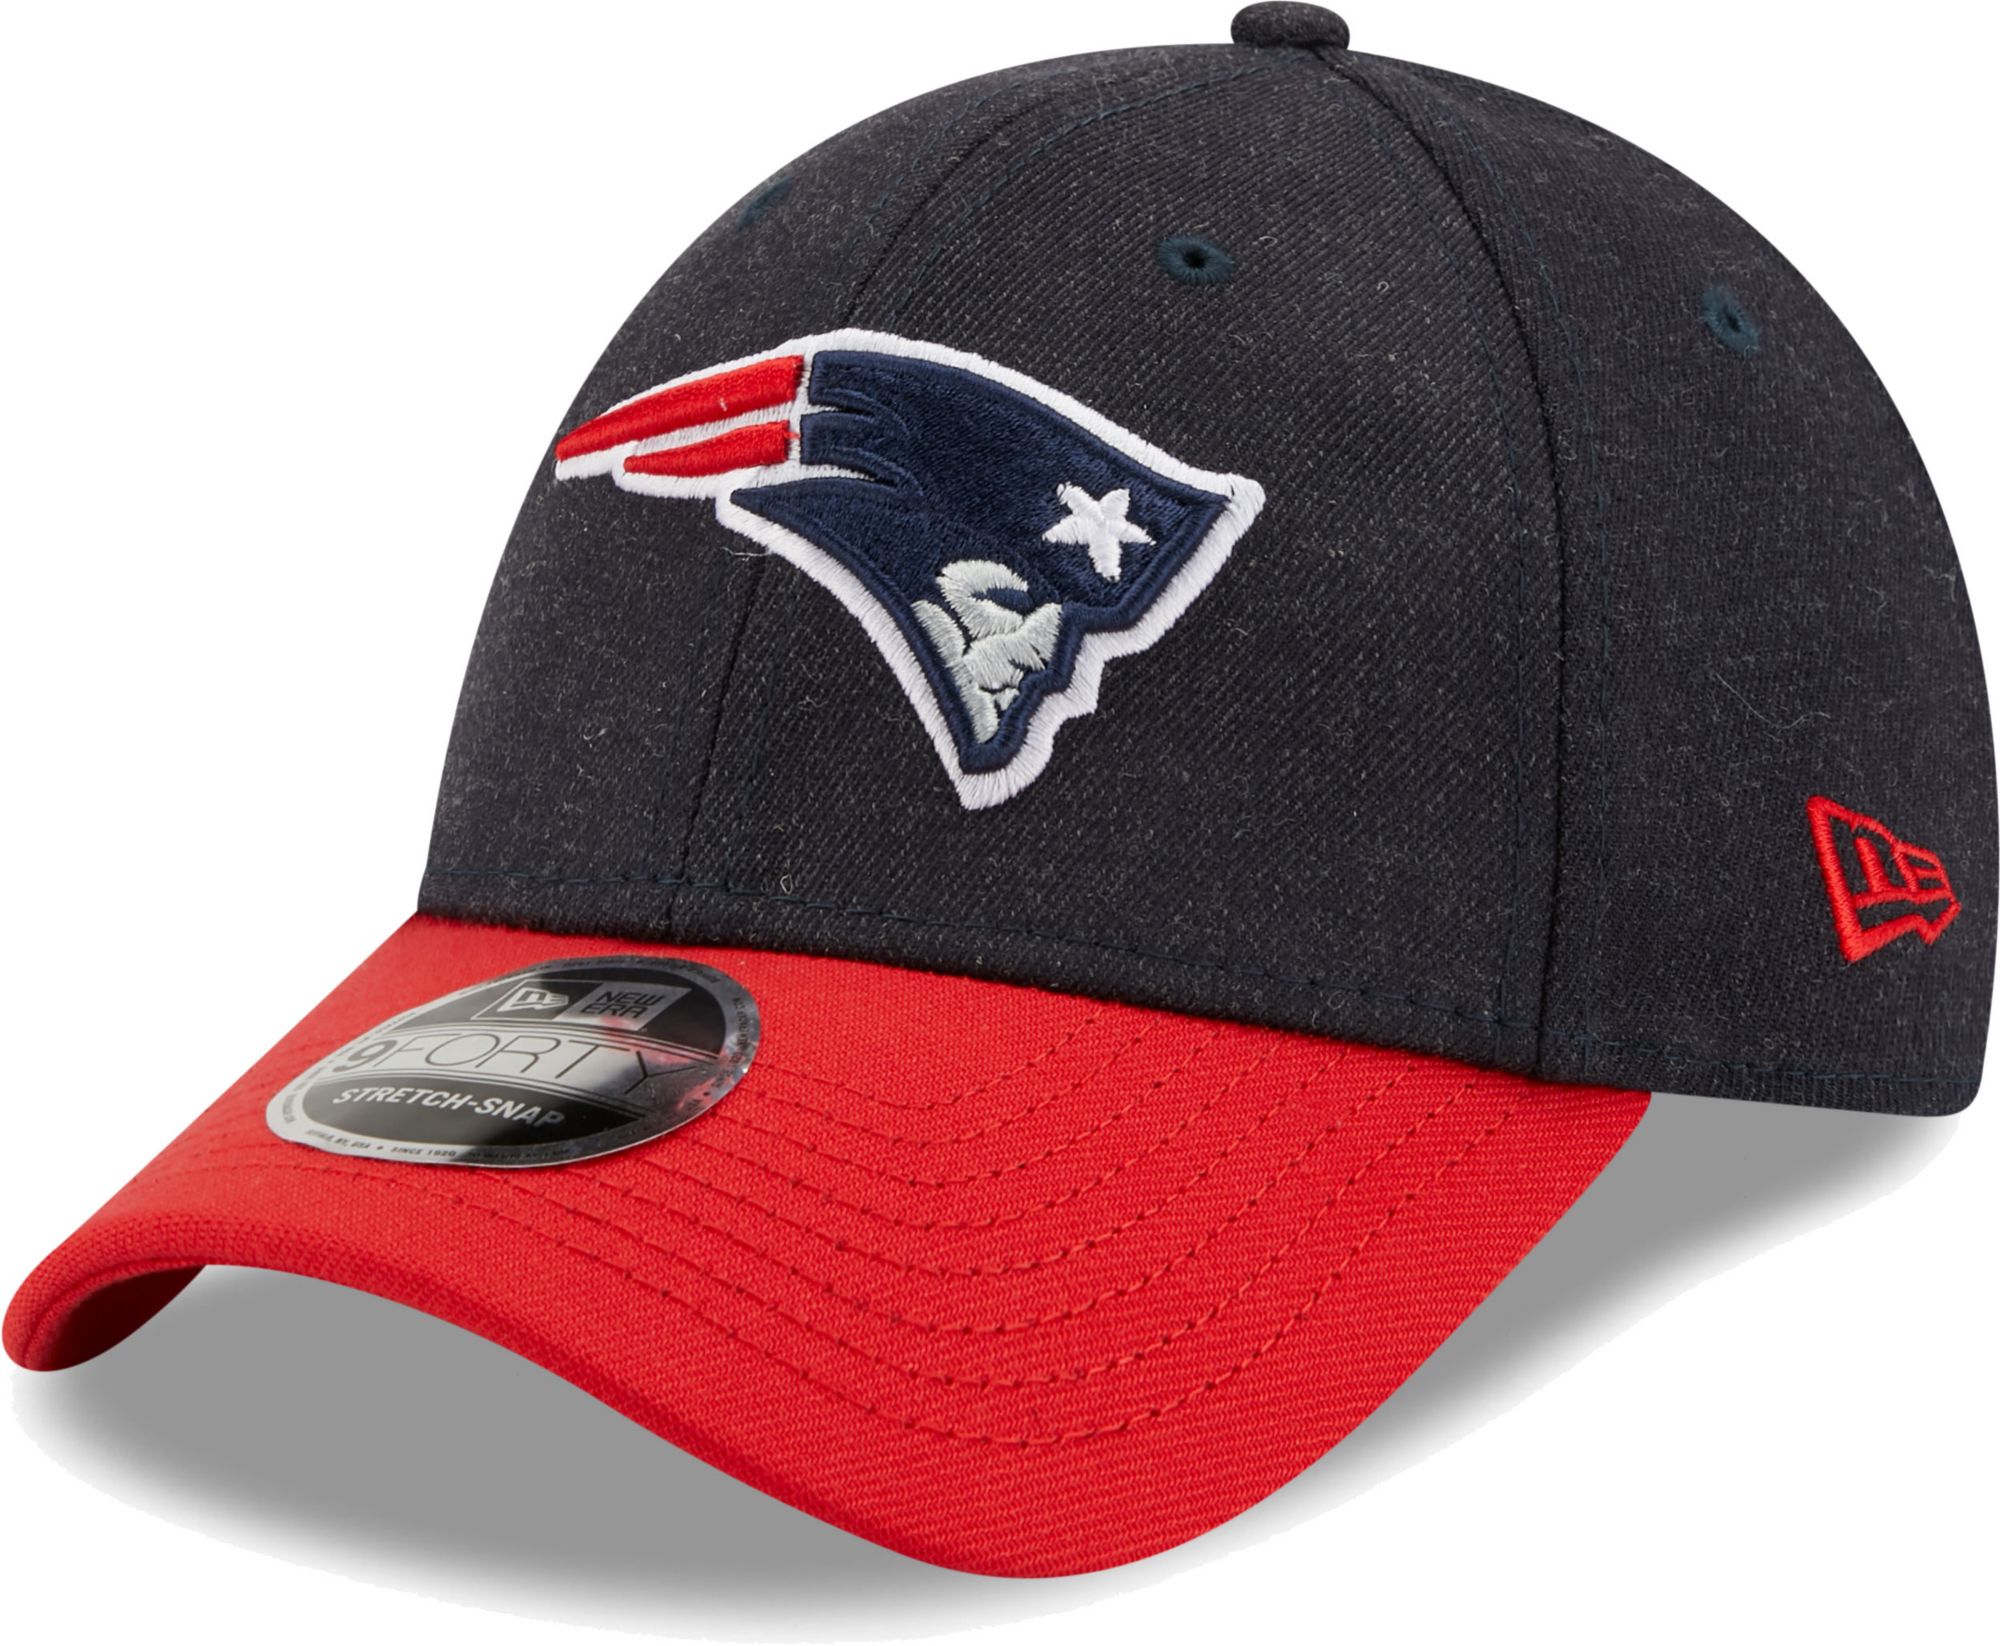 patriots new era hat